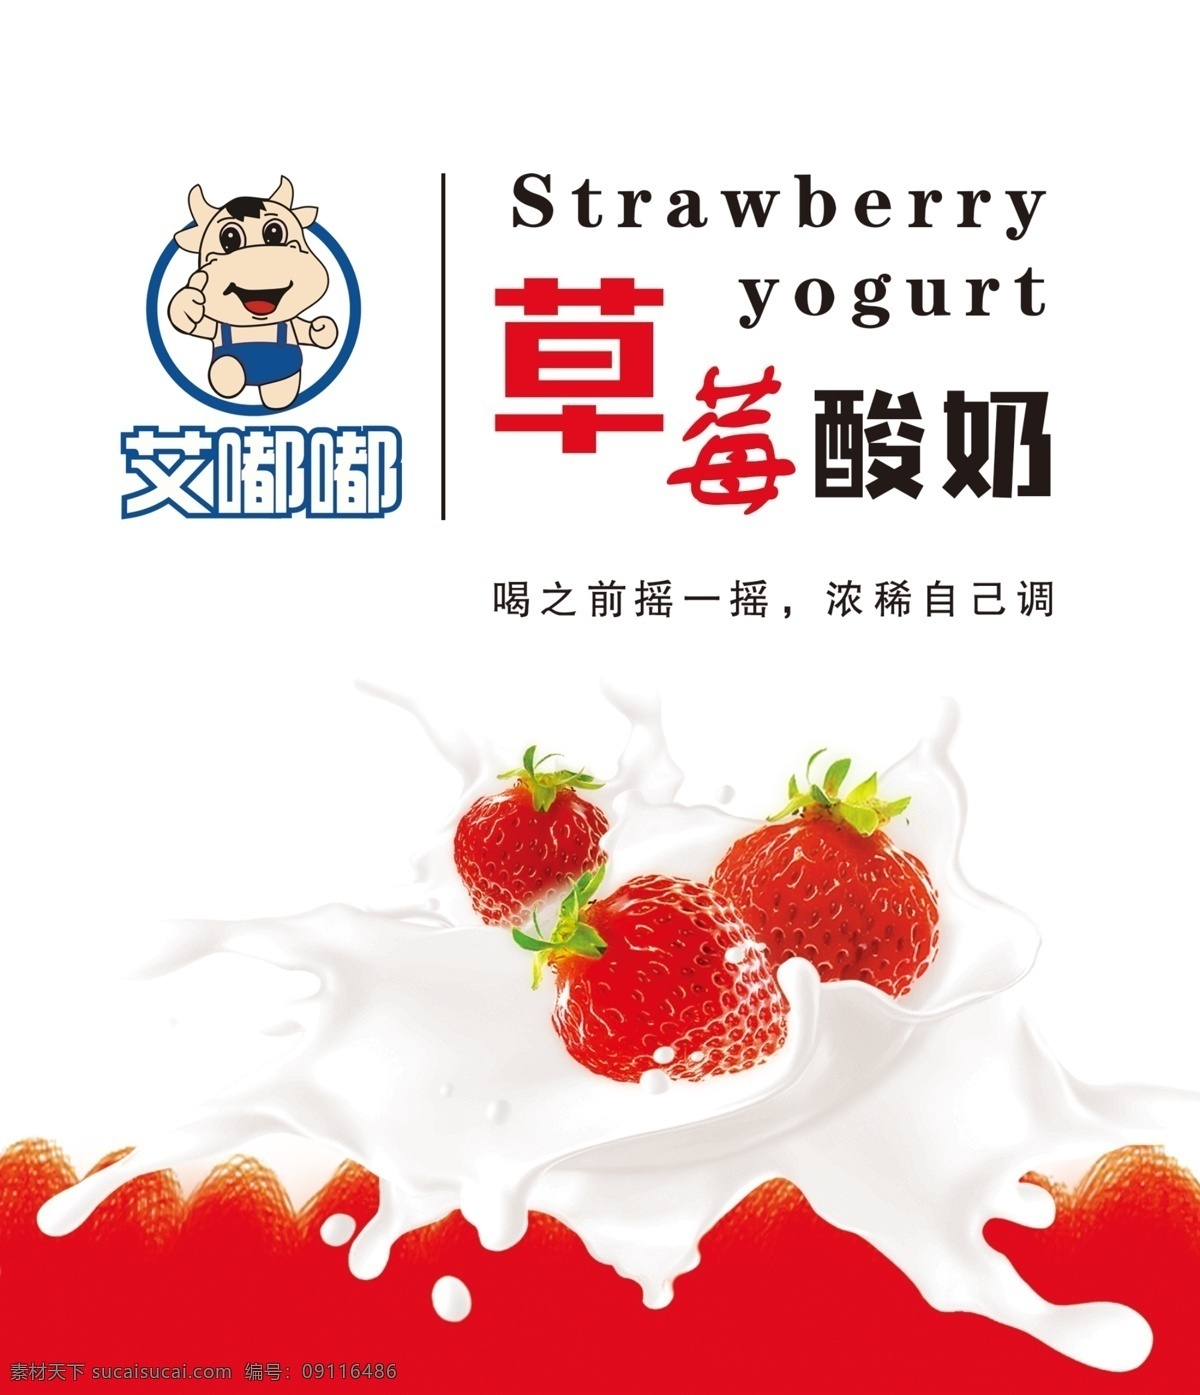 酸奶 贴纸 标签 实际平面图 不干胶 草莓图片 矢量图 logo设计 英文 小牛标志 包装设计